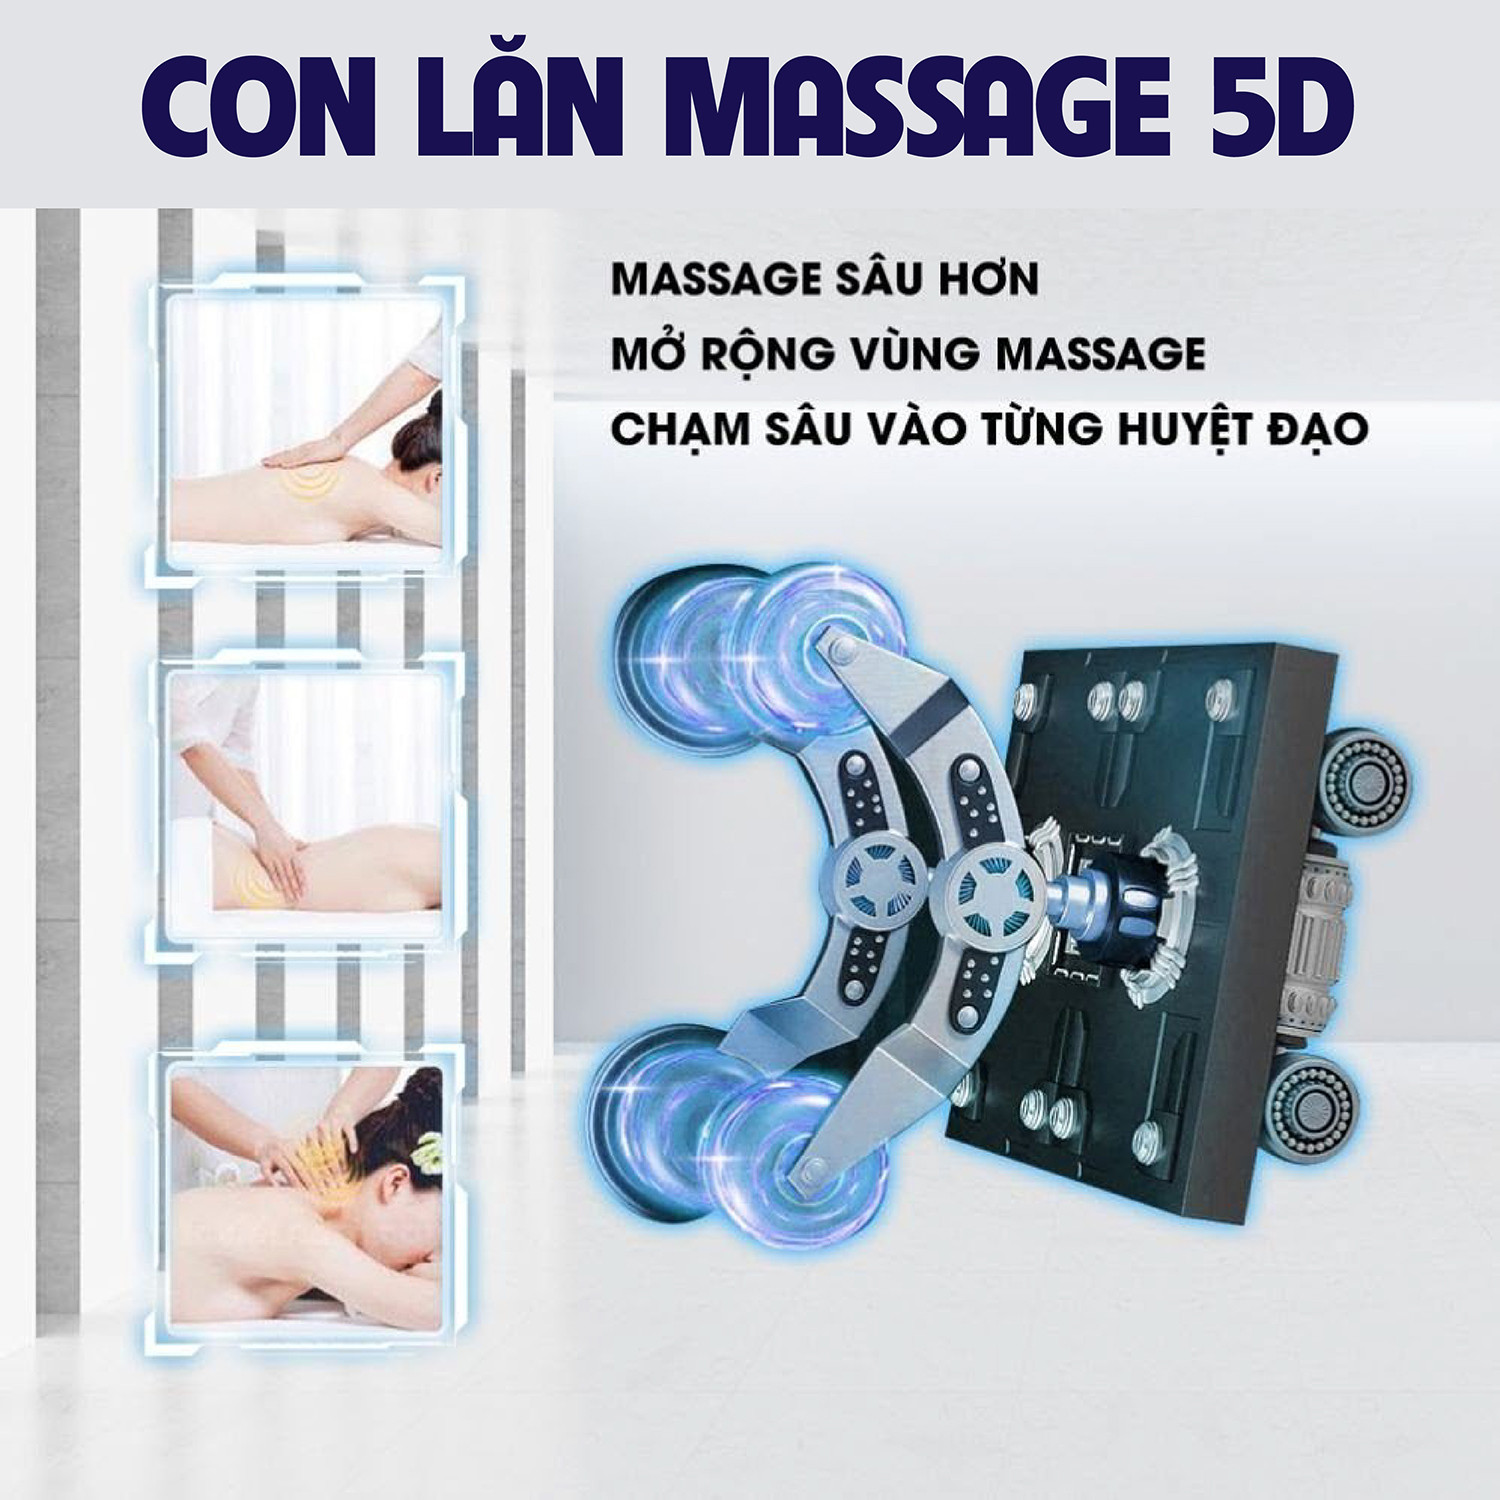 Con lăn massage 5D giúp massage sâu hơn mở rộng vùng massage đến sâu các vị trí huyệt đạo của cơ thể